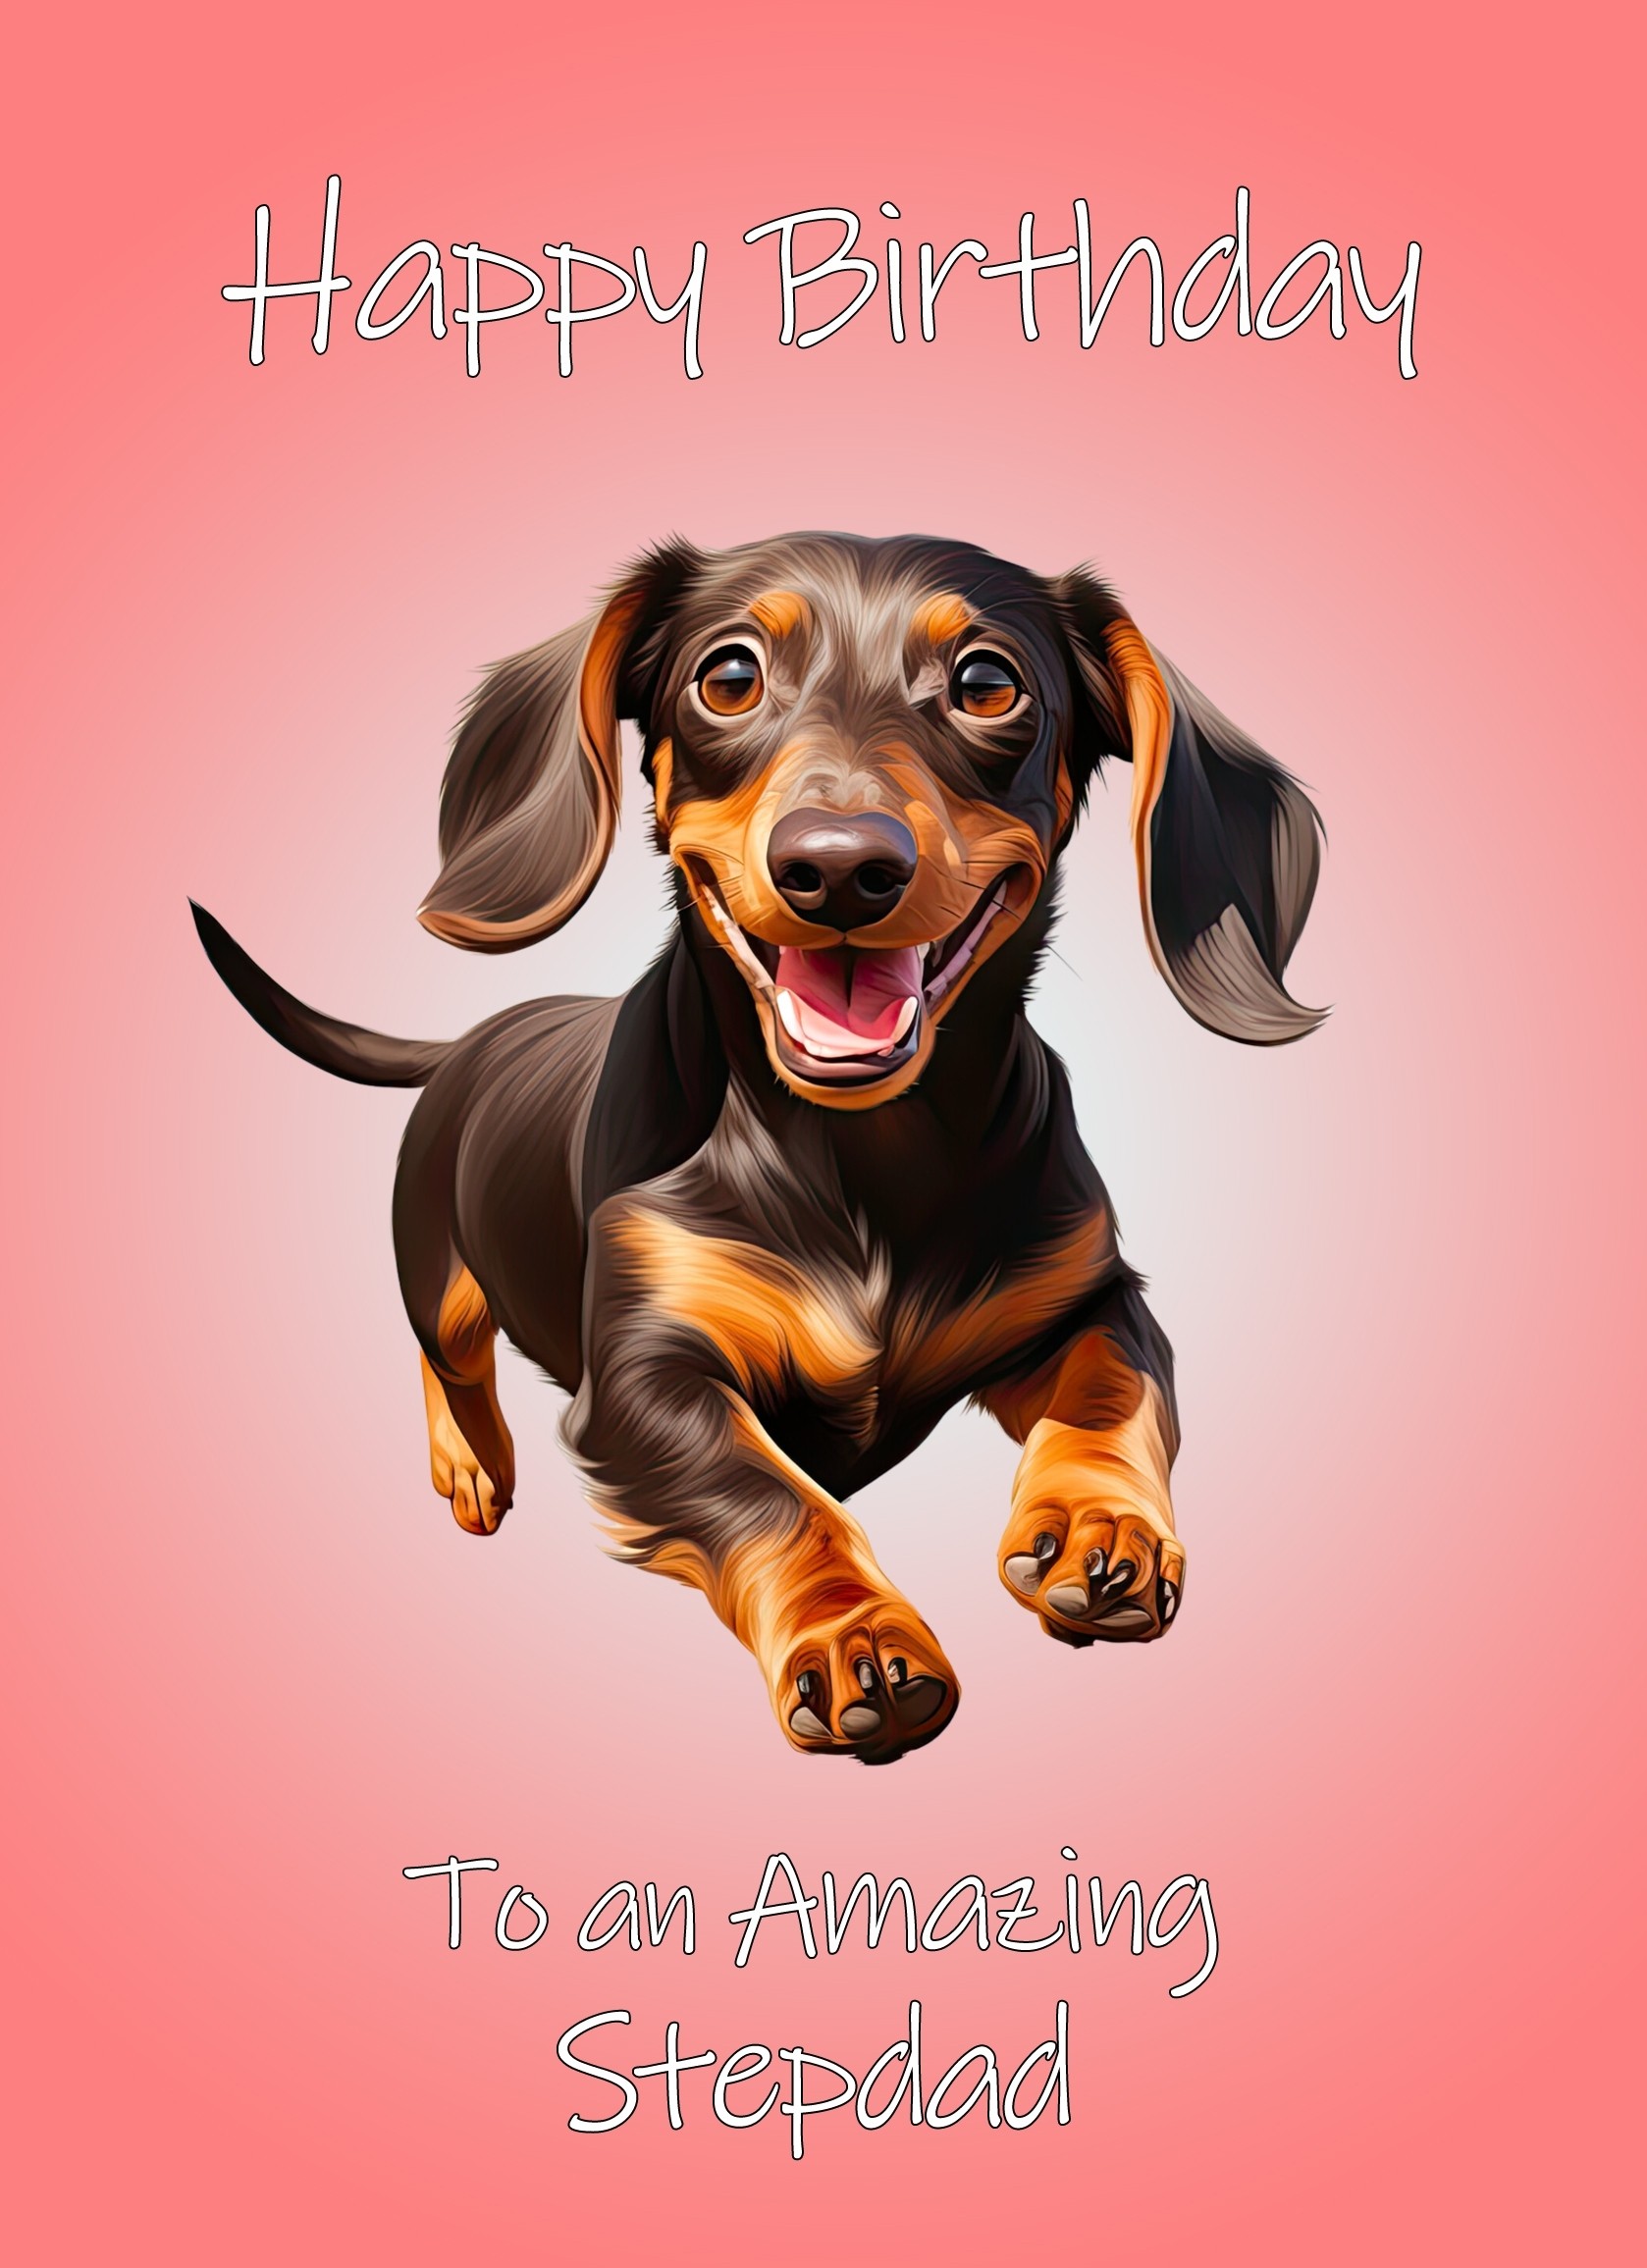 Dachshund Dog Birthday Card For Stepdad